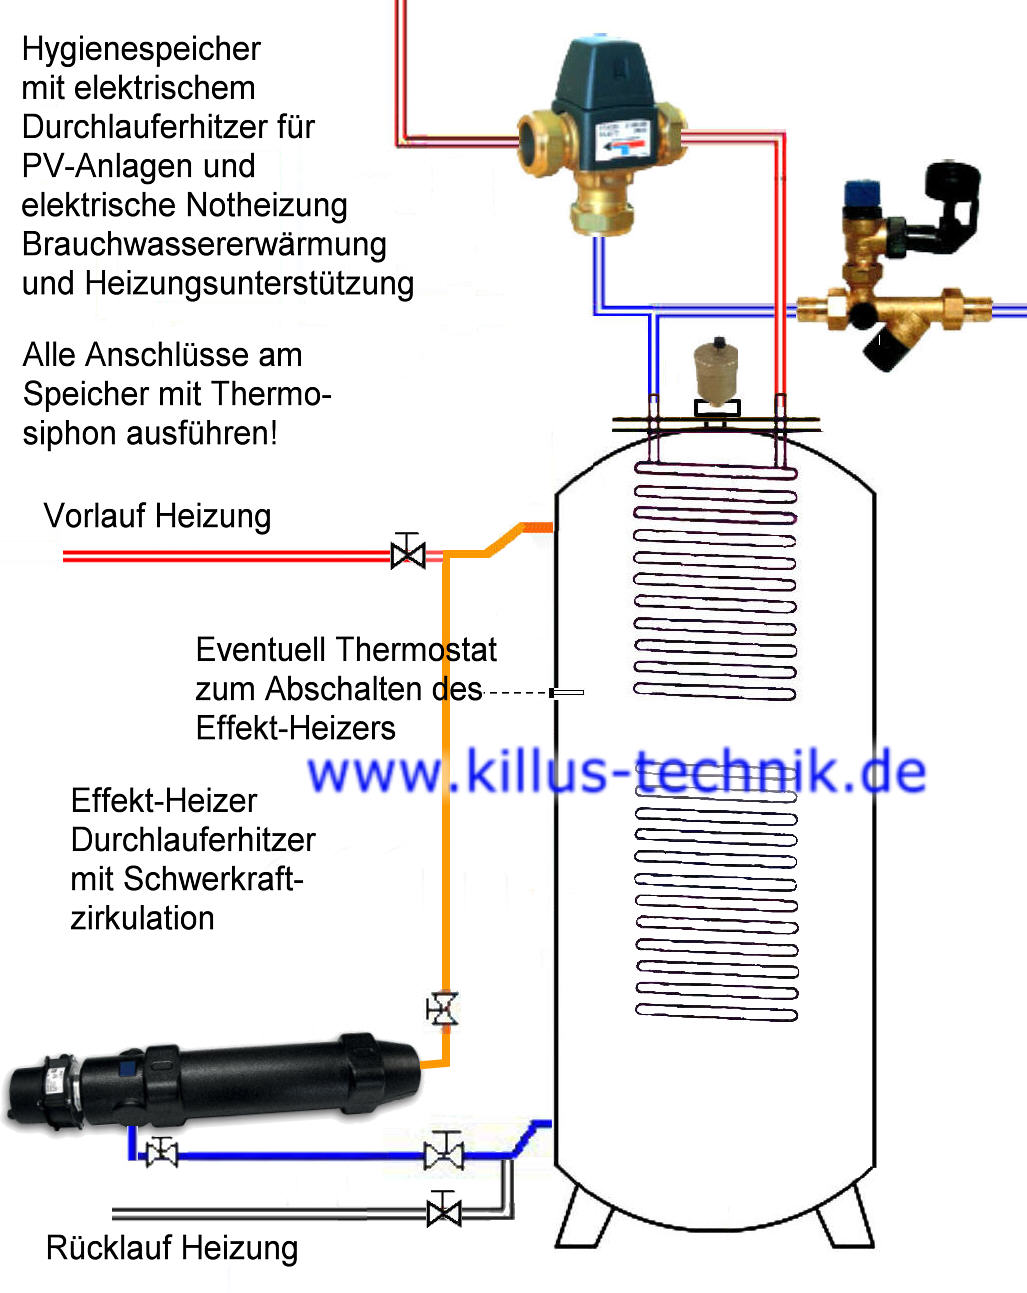 Killus-Technik - Effekt-Heizers-AC elektrischer Durchlauferhitzer 2 bis 6  Kilowatt aus Edelstahl Speziell geeignet für Photovoltaik-Anlagen Zum  Erhitzen von Wasser und anderen Medien im Durchlaufverfahren